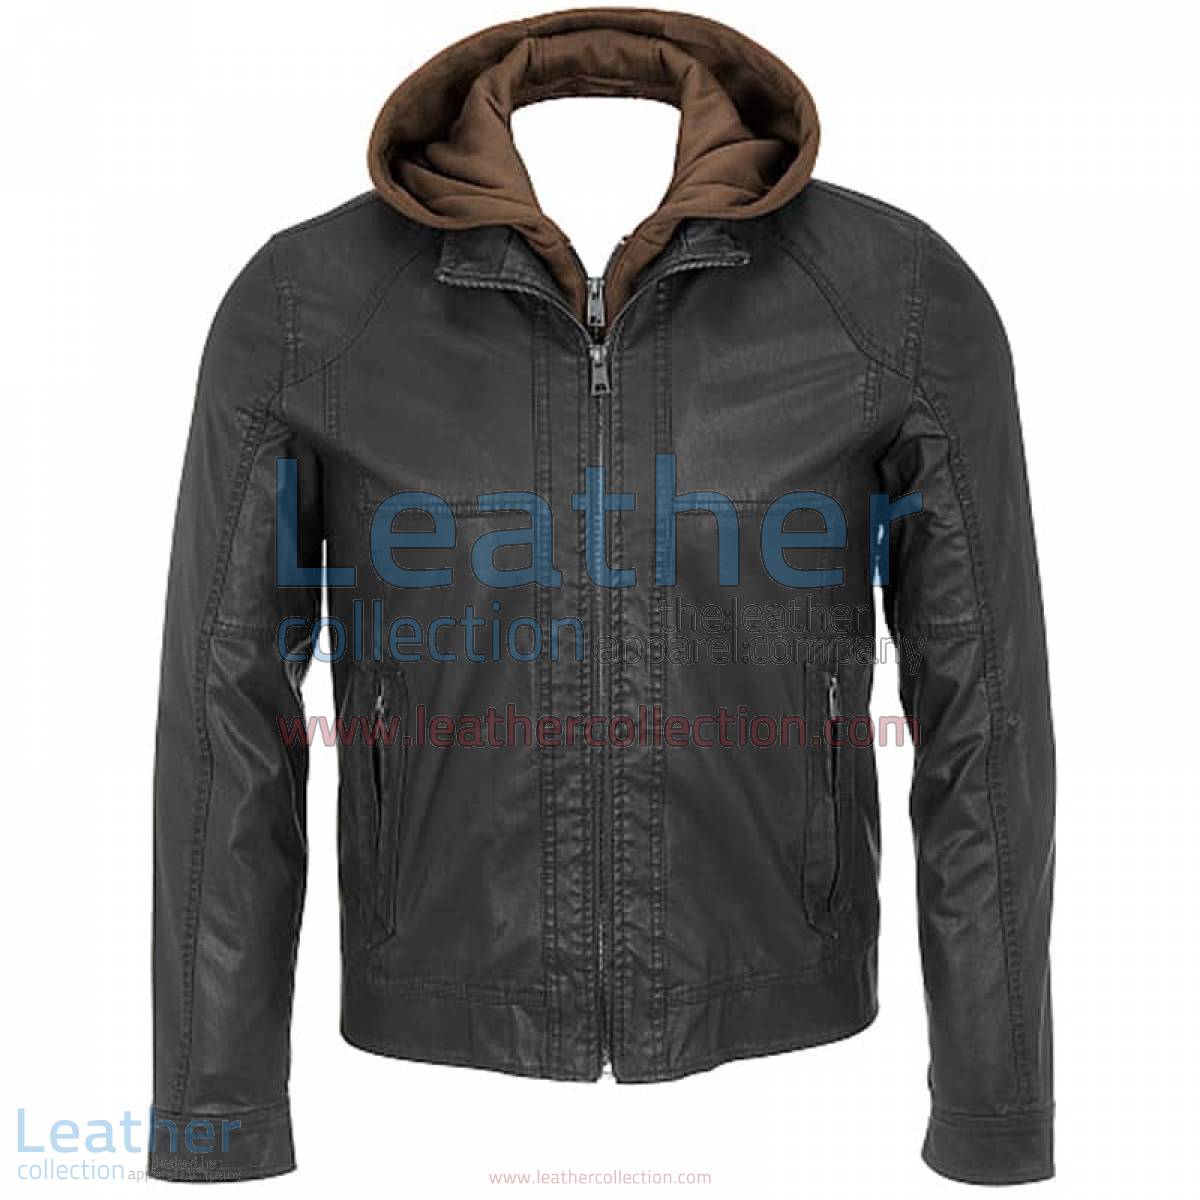 Leather Jacket With Hood | leather jacket with hood